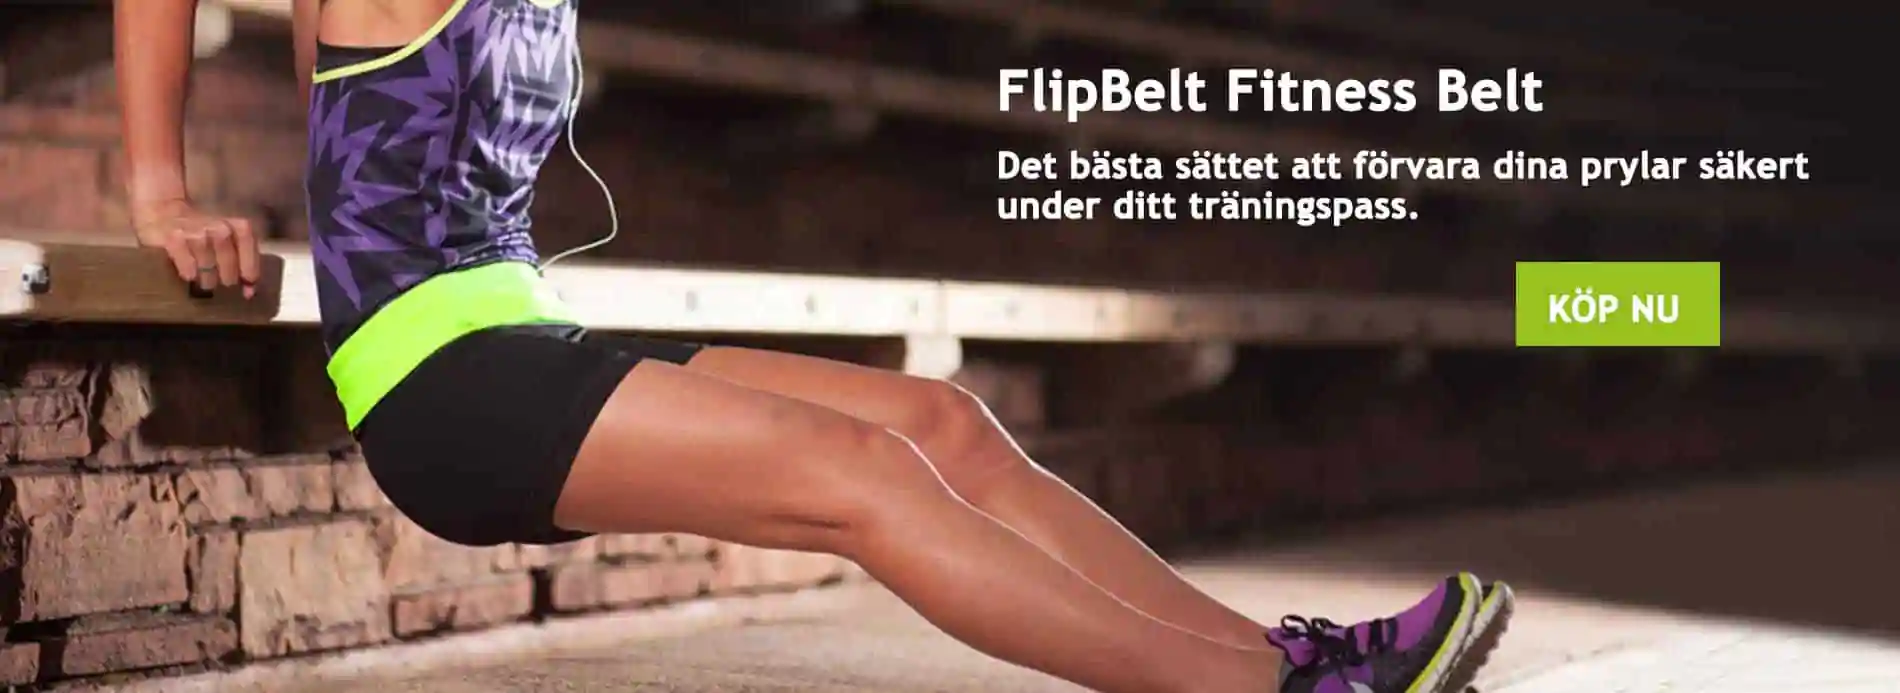 flipbelt fitness